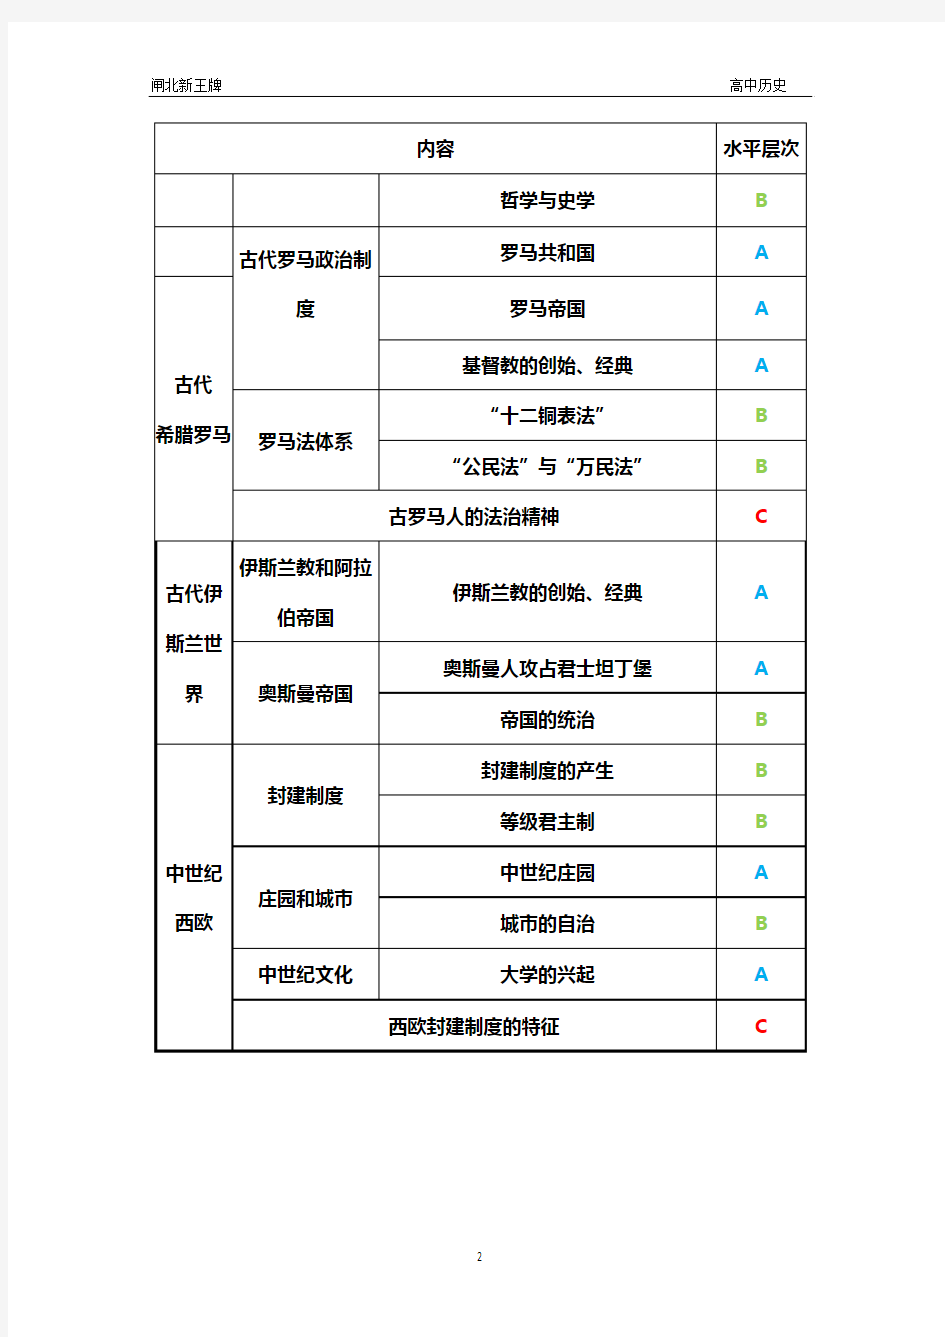 2015上海历史高考考纲要求